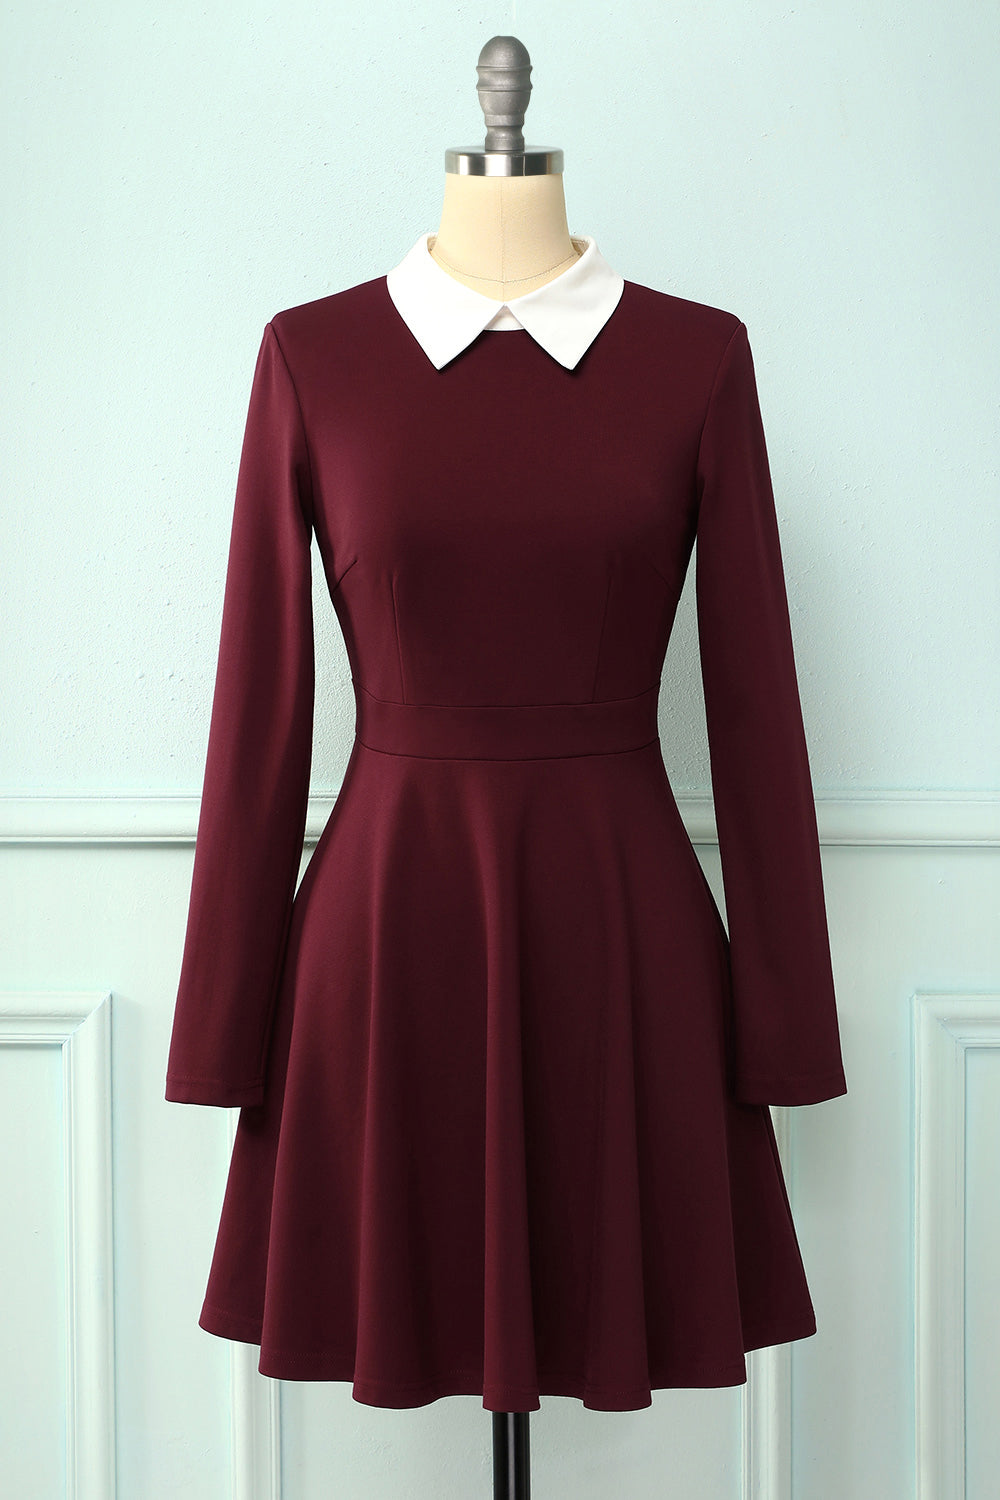 burgundy peter pan collar dress